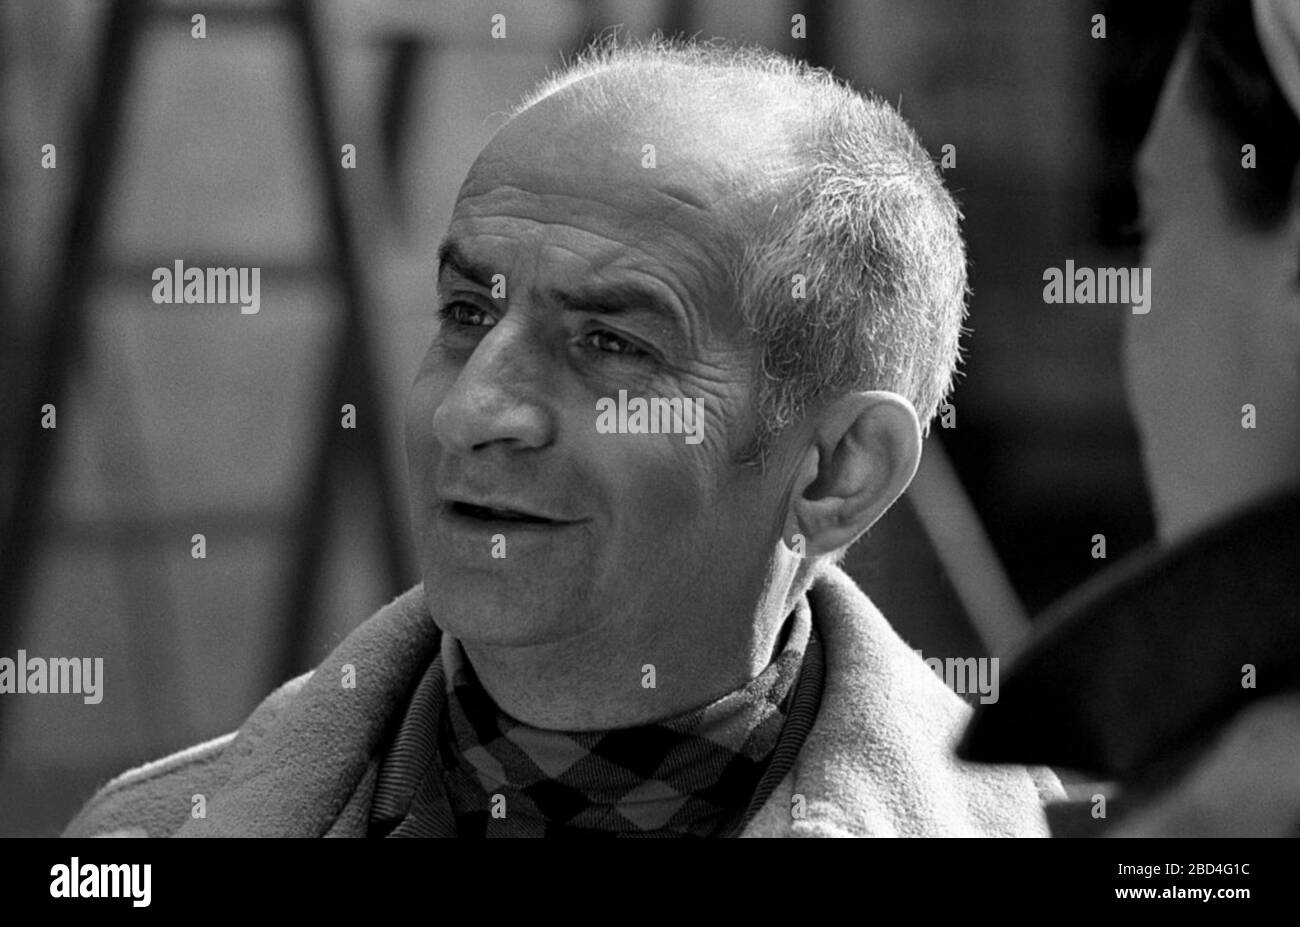 L'attore francese Louis de Funès è girato in primo piano sul set del film l'homme orchestre (diretto da Serge Korber). Bassano Romano (Viterbo), Italia, marzo 1970. Foto Stock